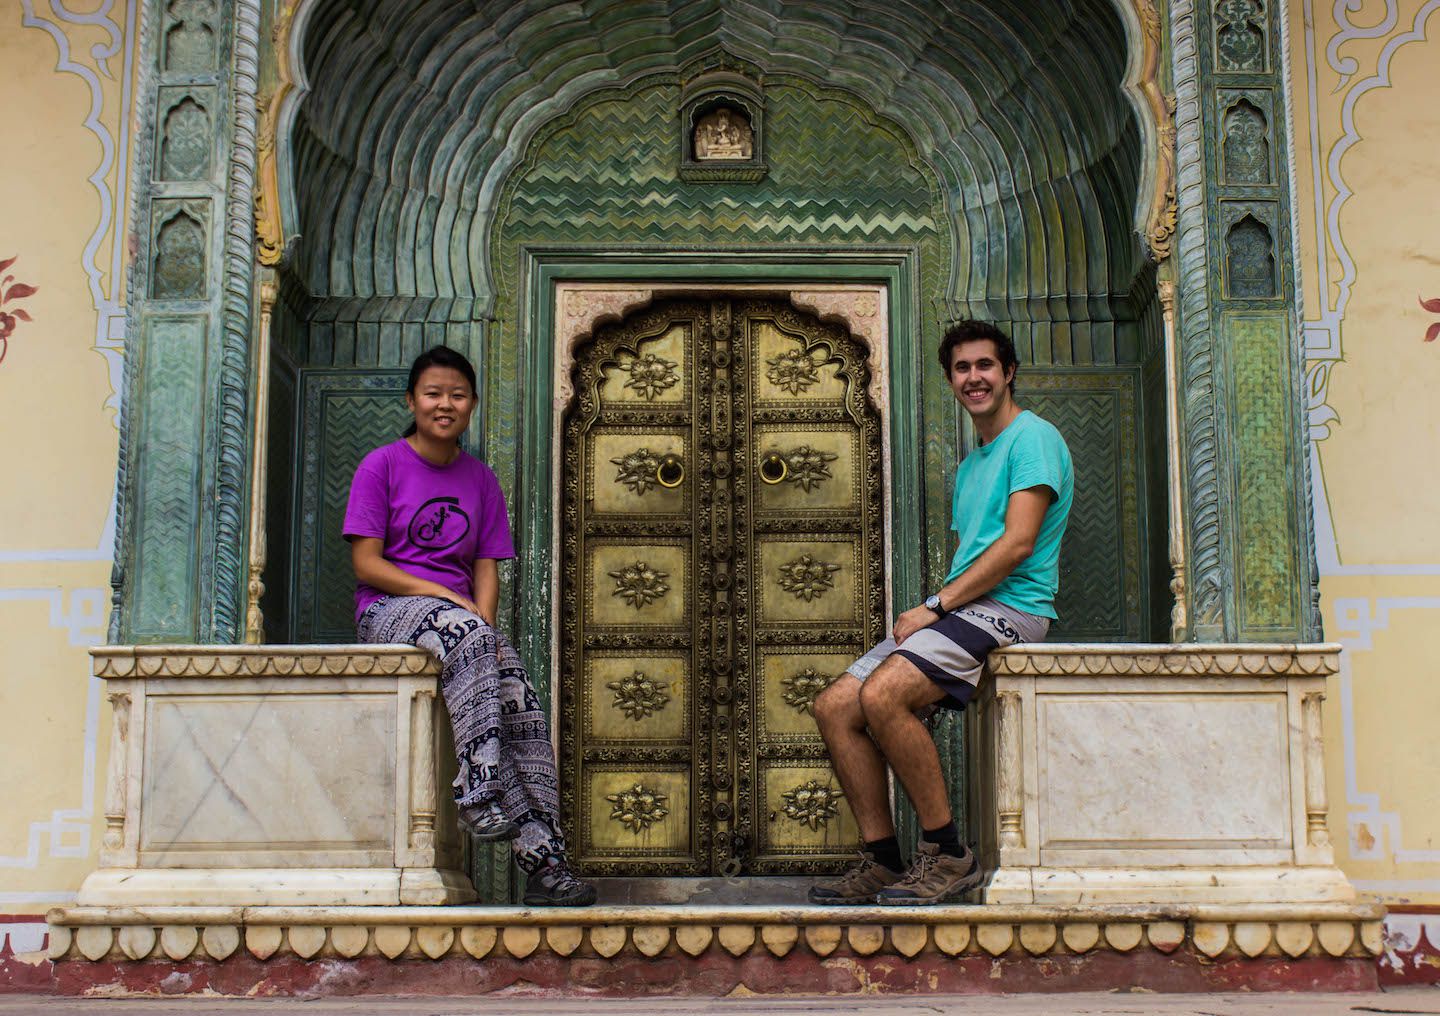 Julie and Carlos at the City Palace, Jaipur, India